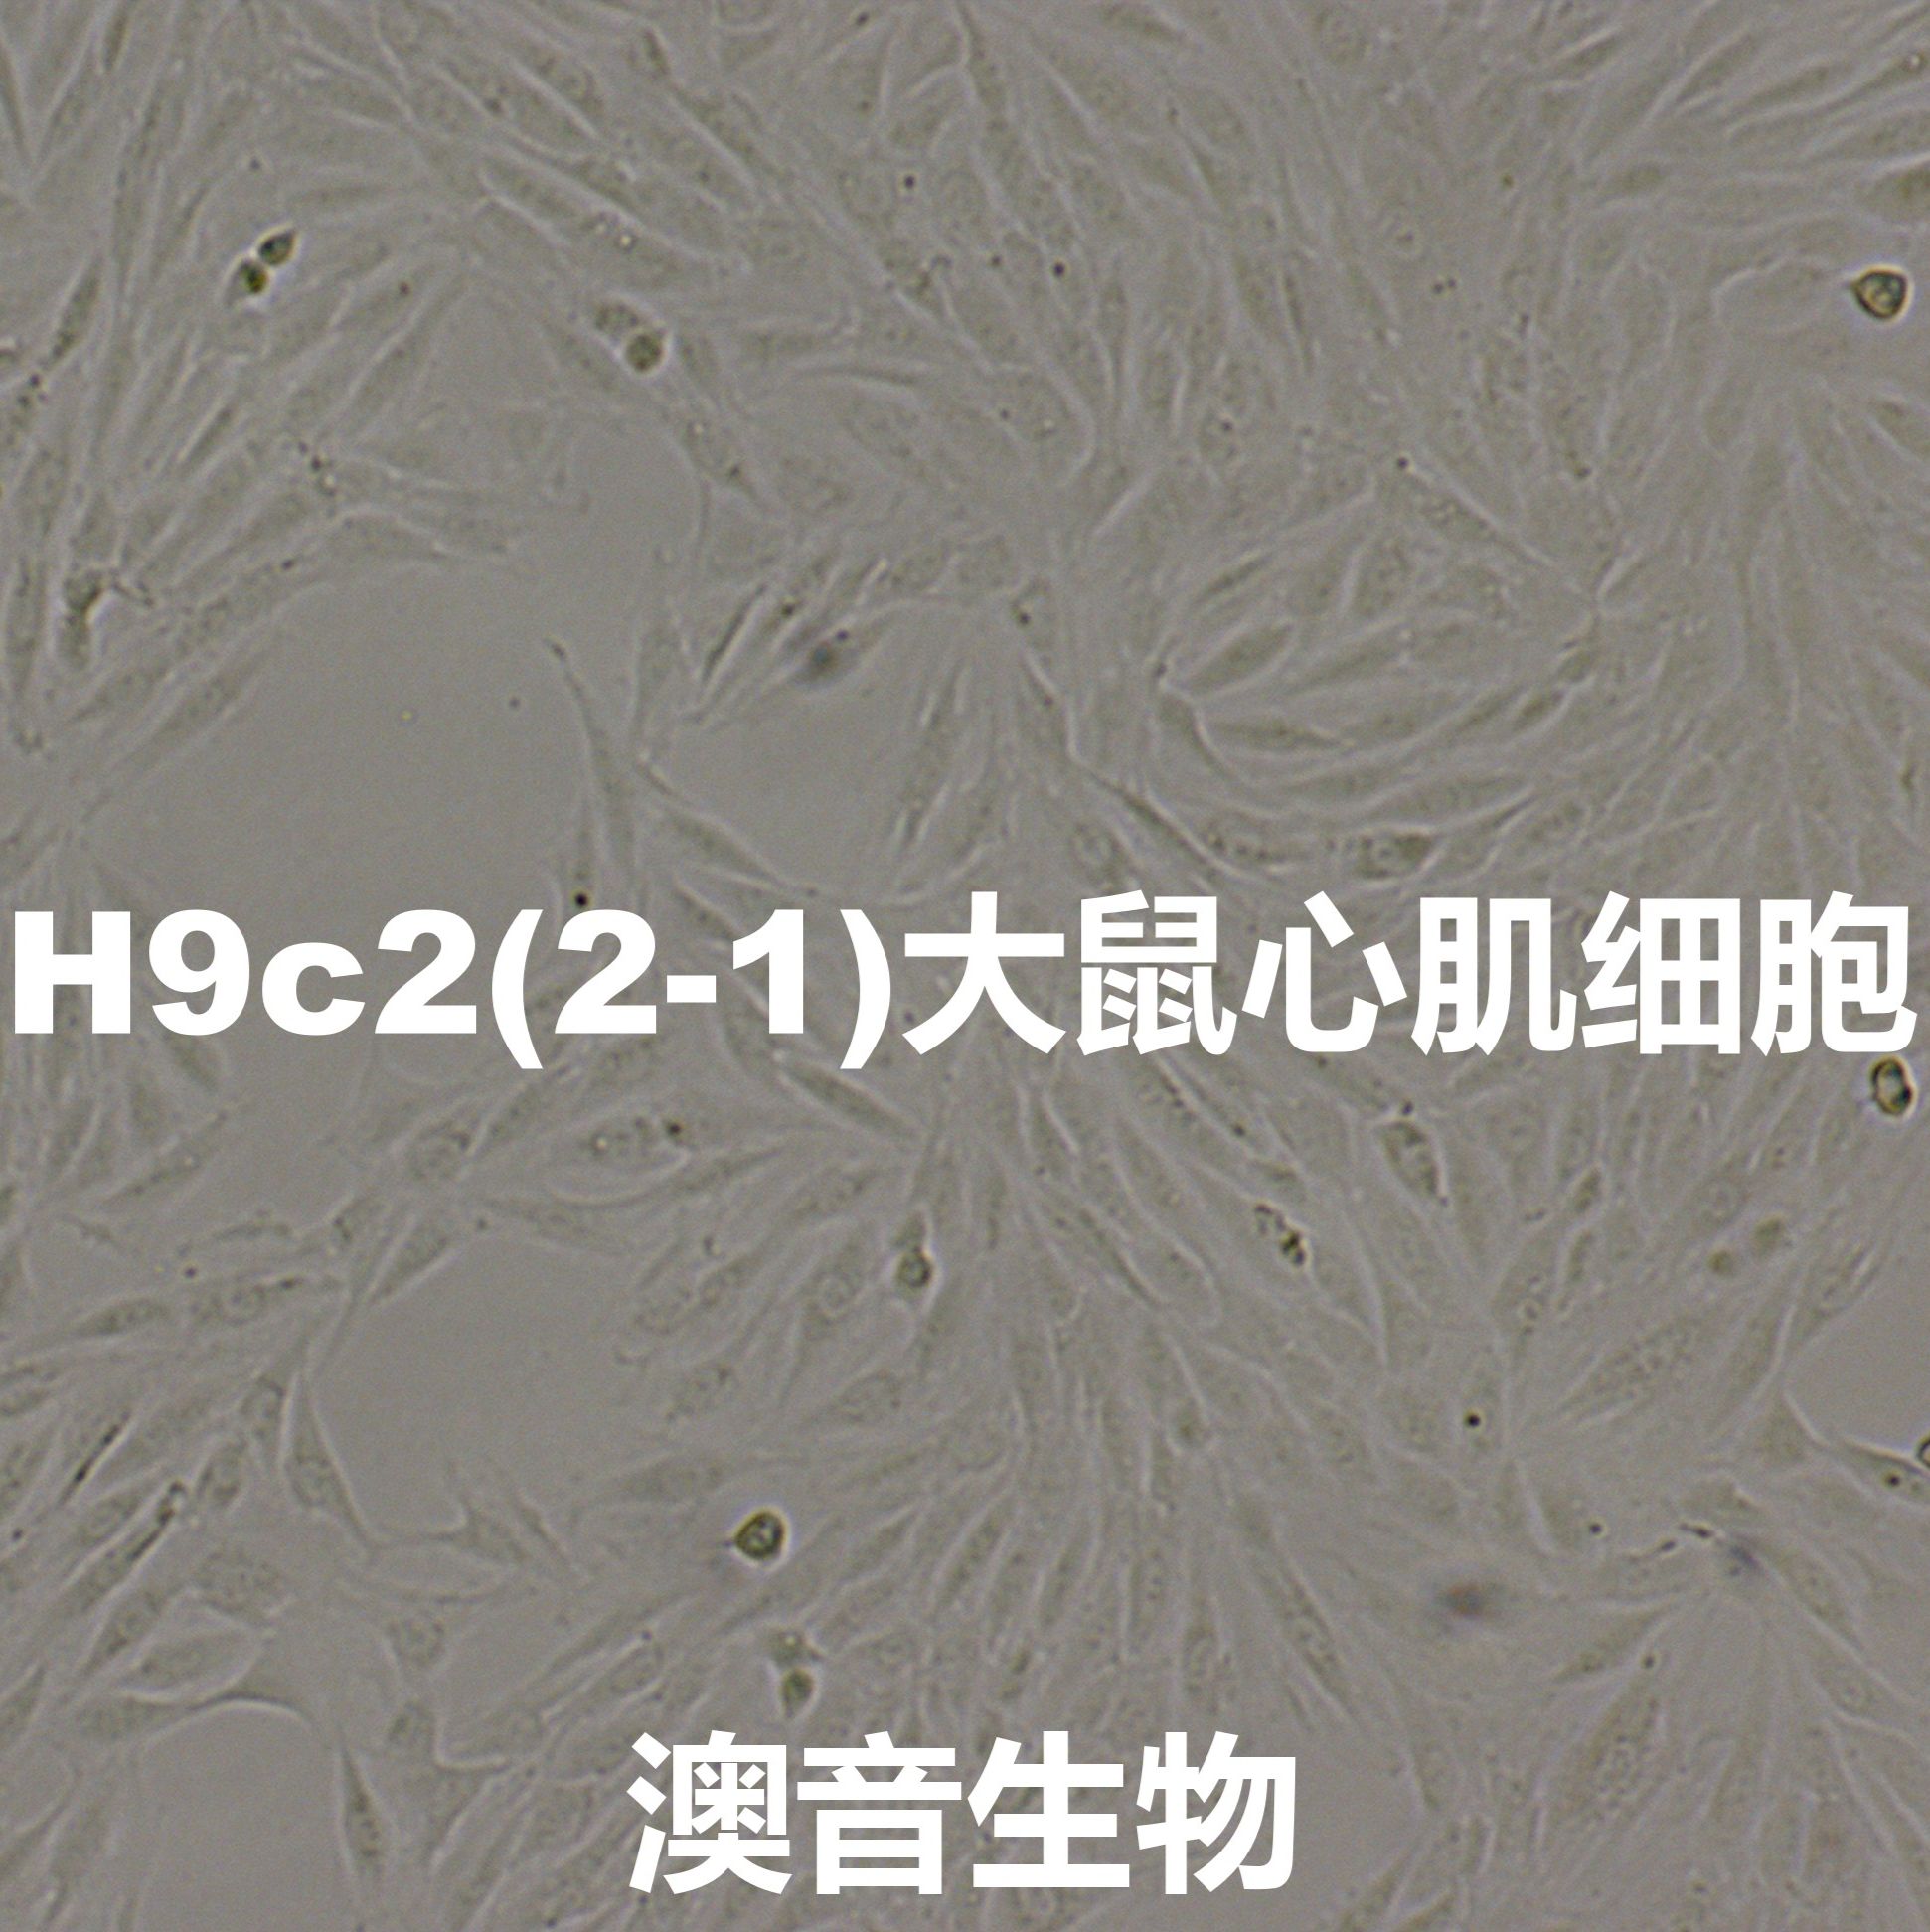 H9c2(2-1)【H9c2 (2-1); H9c2; H9C2】大鼠心肌细胞